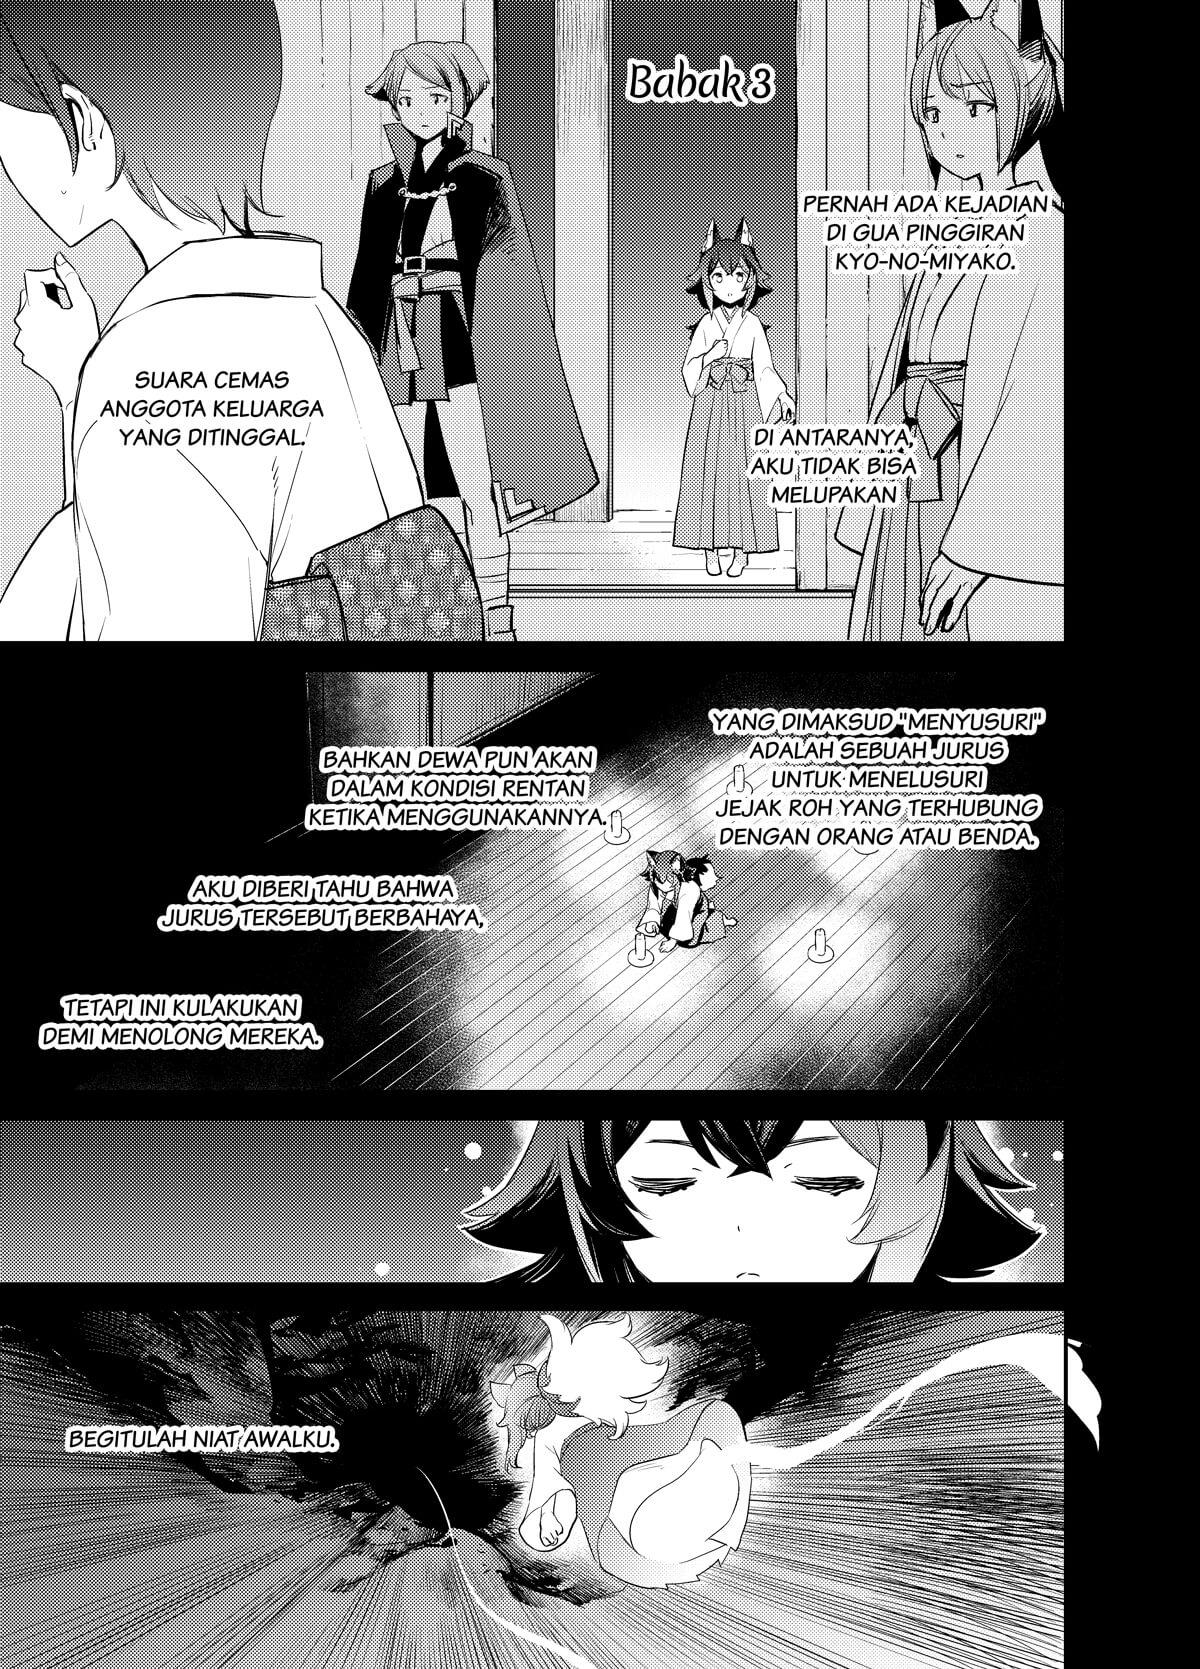 Holoearth Chronicles Side:E ~Yamato Phantasia~ Chapter 3